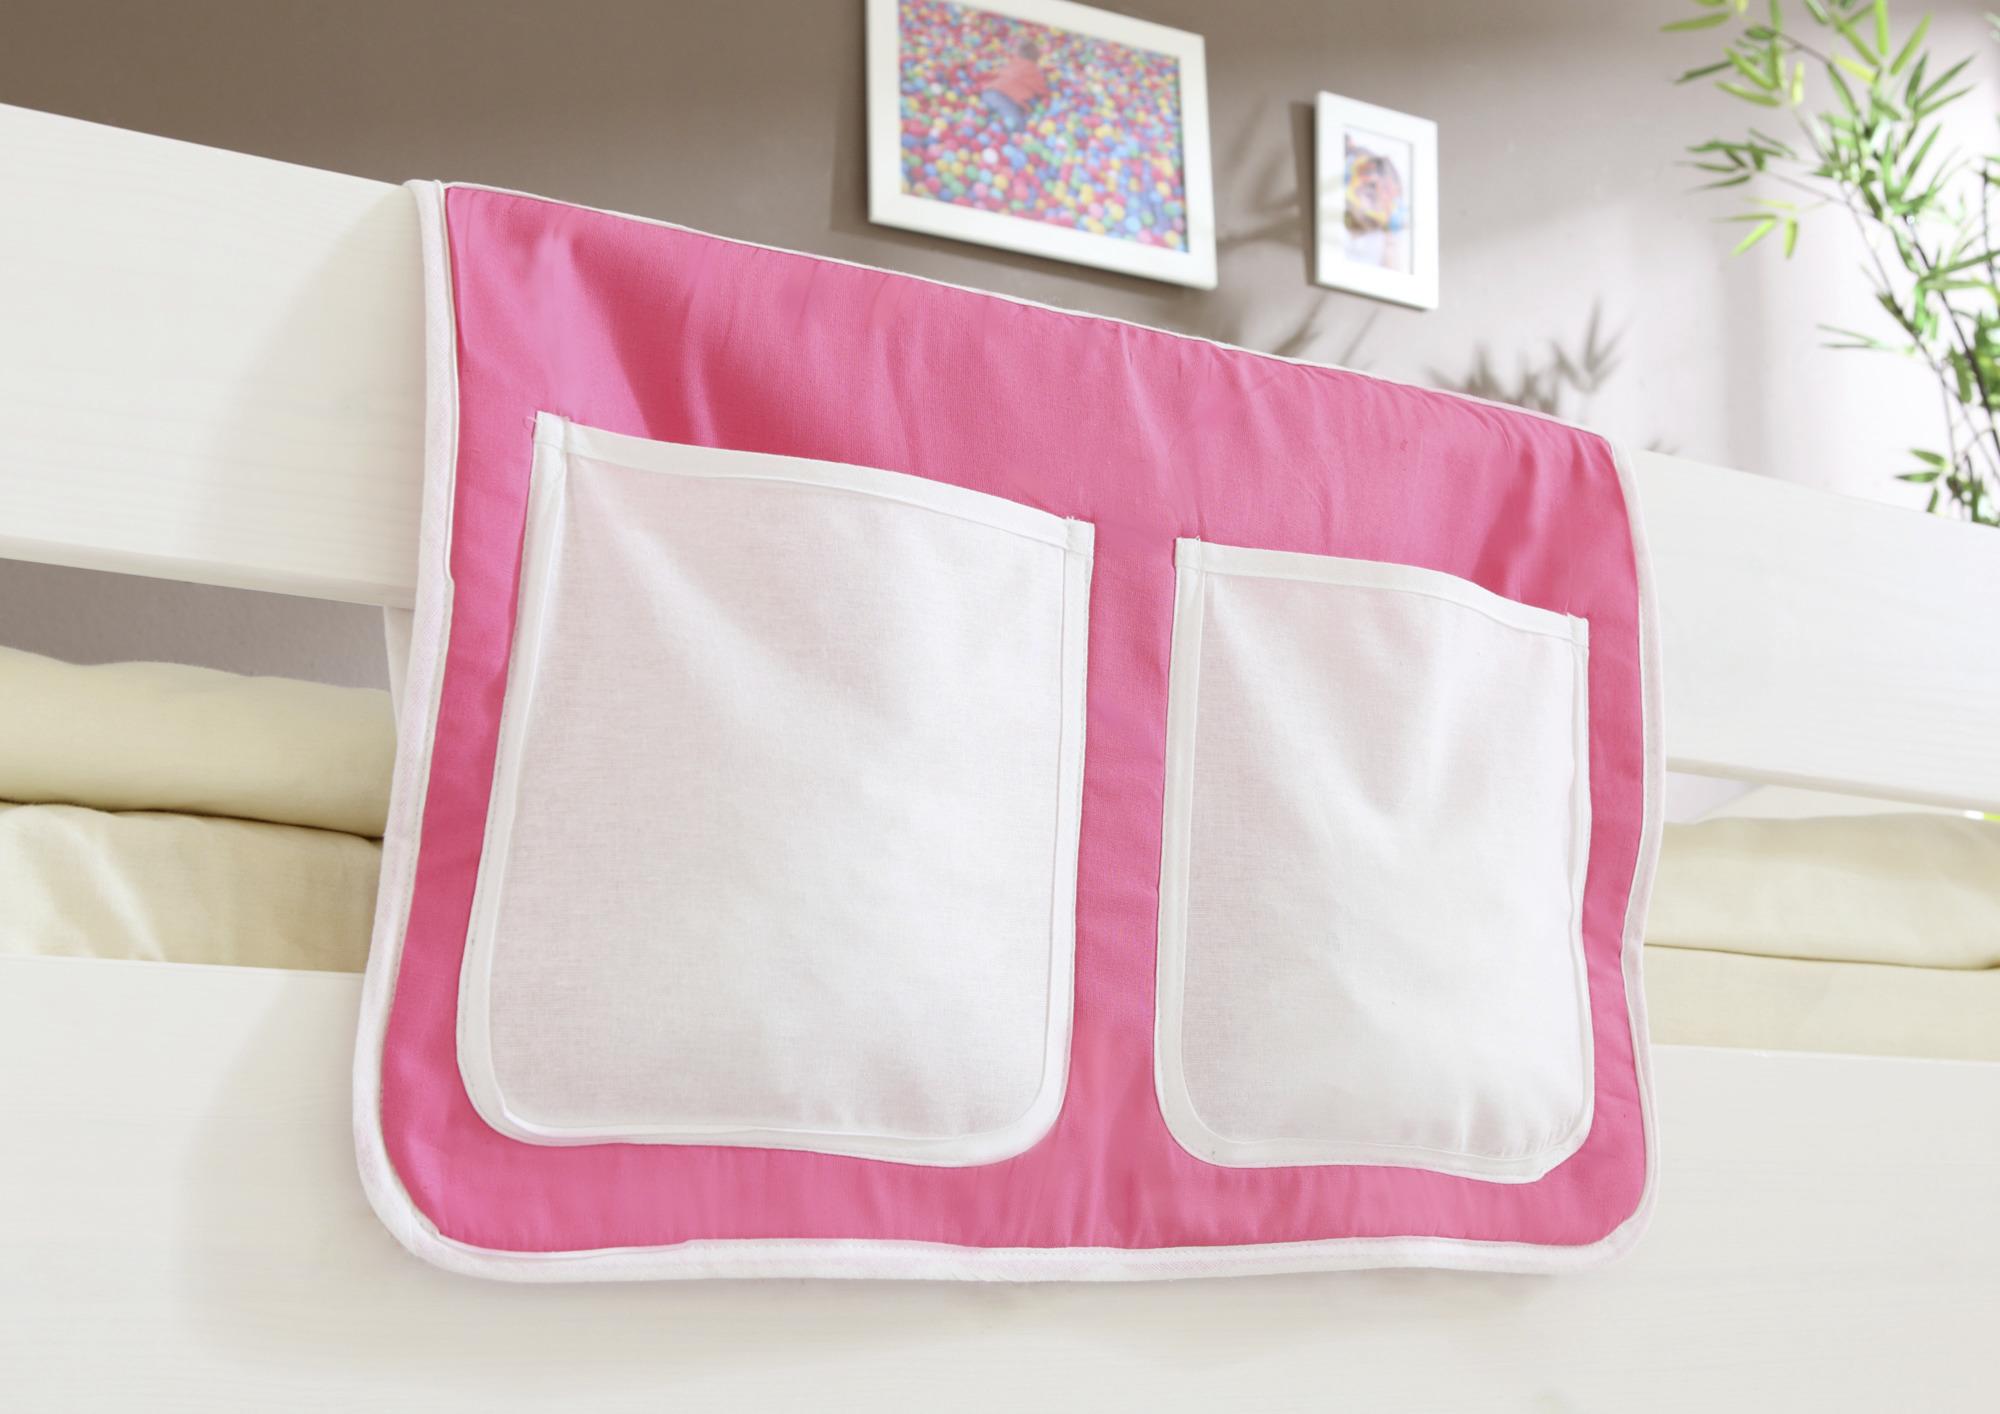 Betttasche "Stofftasche", rosa/weiß - Rosa/Weiß, KONVENTIONELL, Textil (56/32/2cm) - MID.YOU